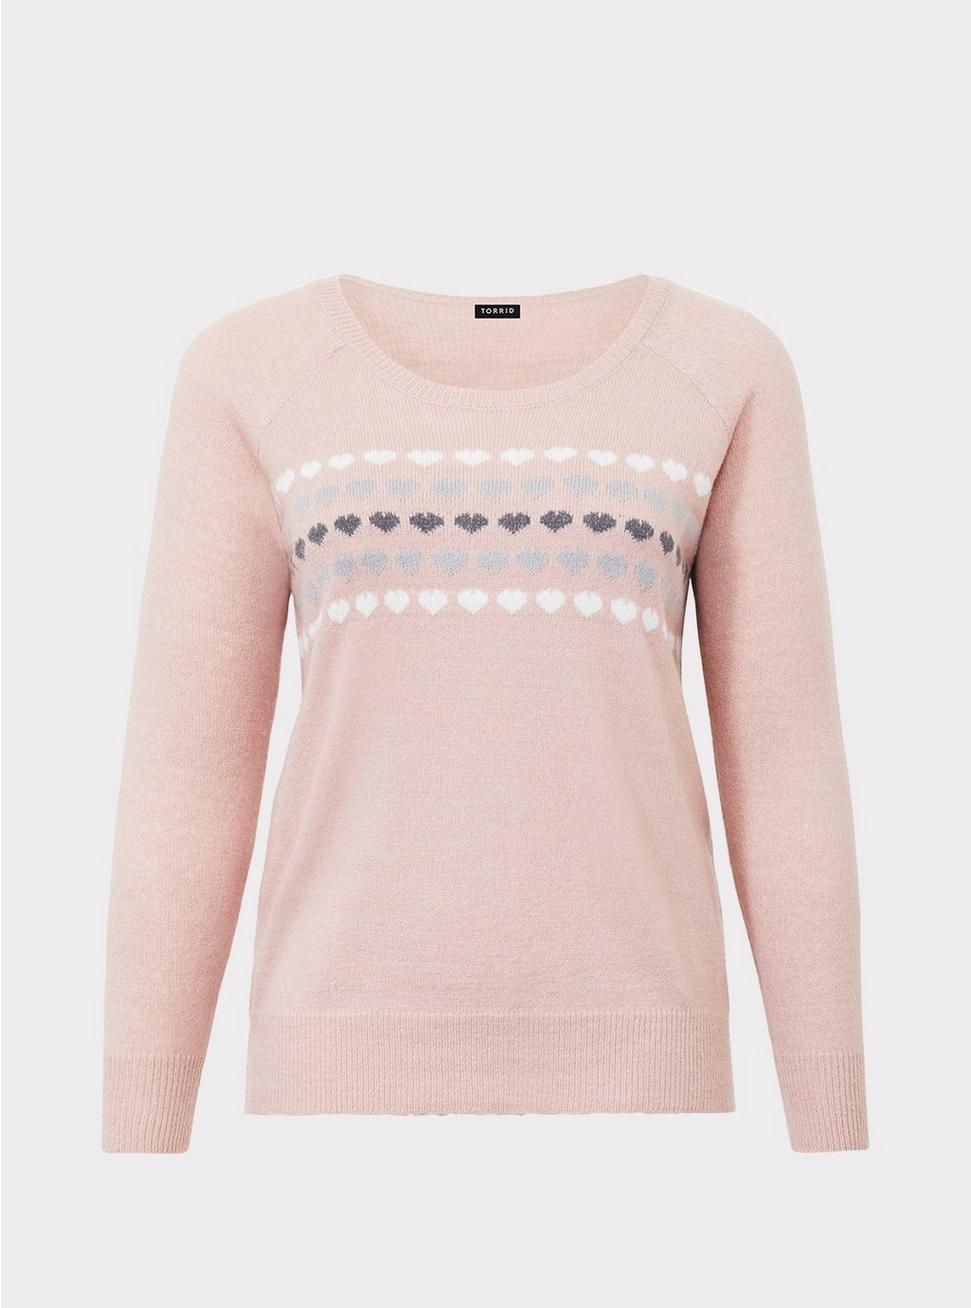 Plus Size - Blush Pullover Raglan Sweater - Torrid